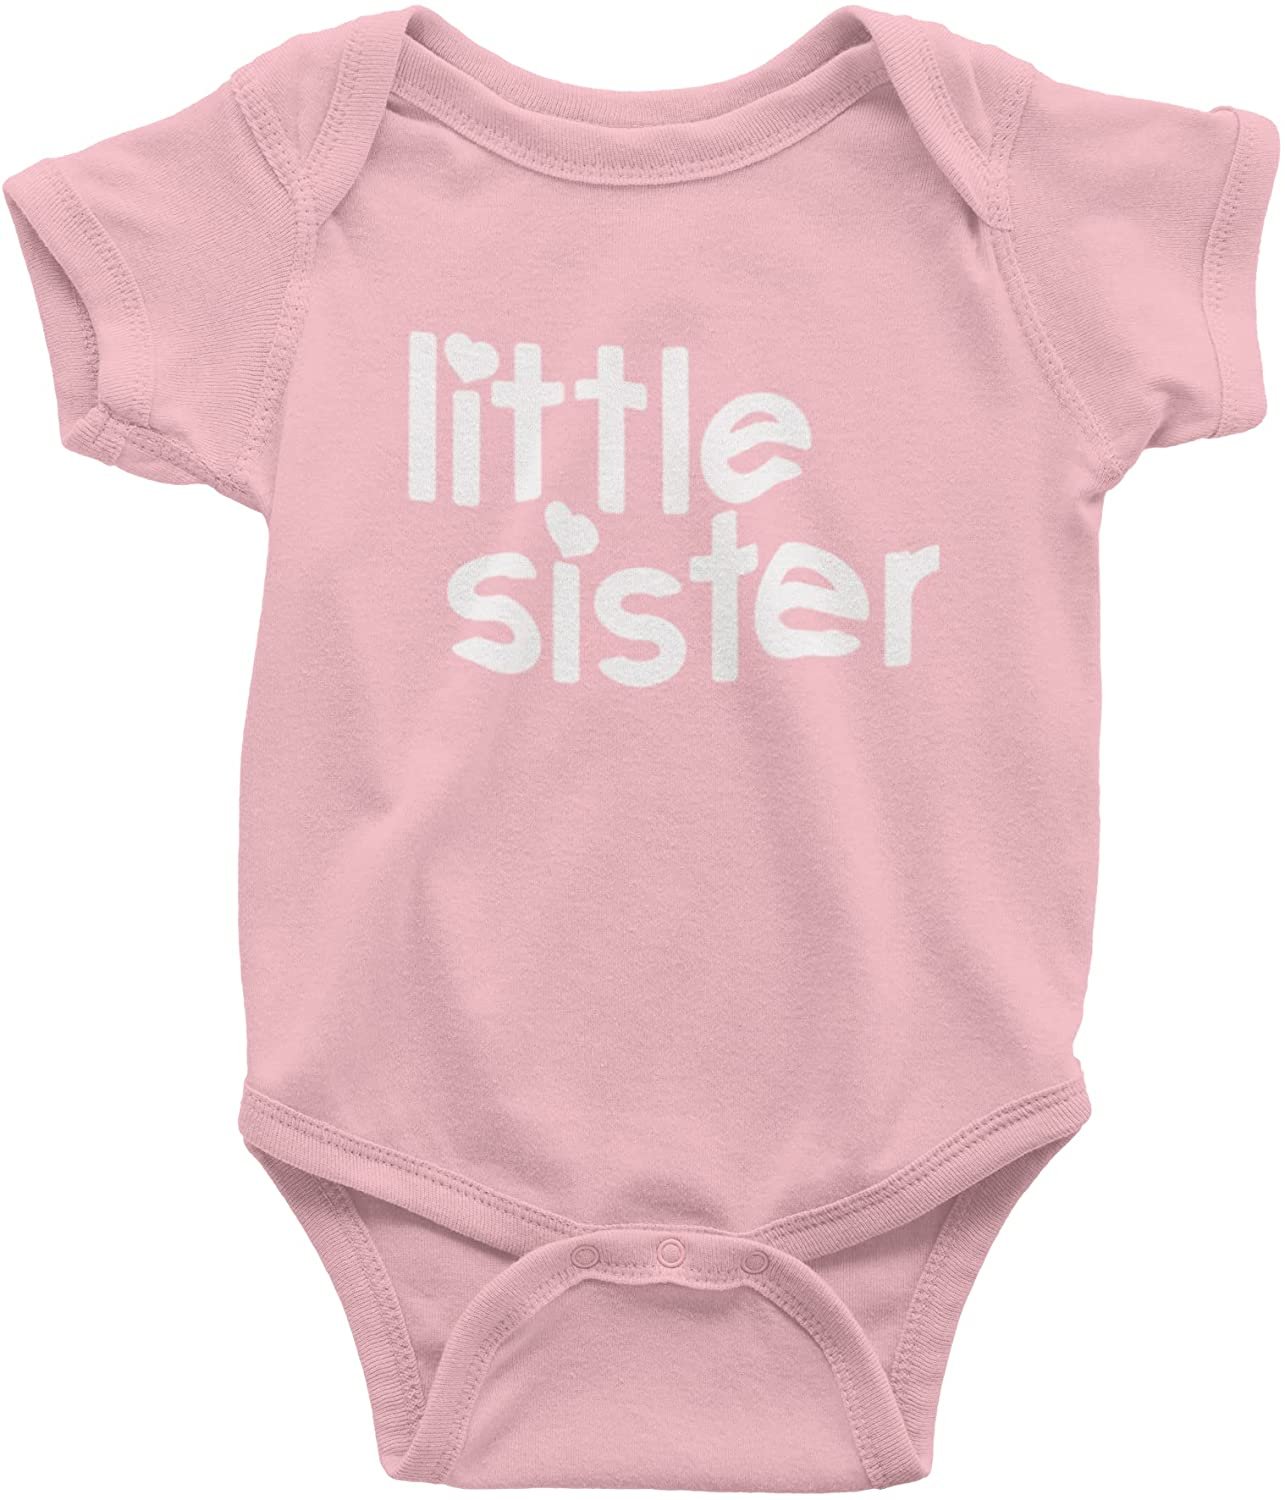 Annonce de nouveau-né Little Sister Baby Gift Body (Rose)